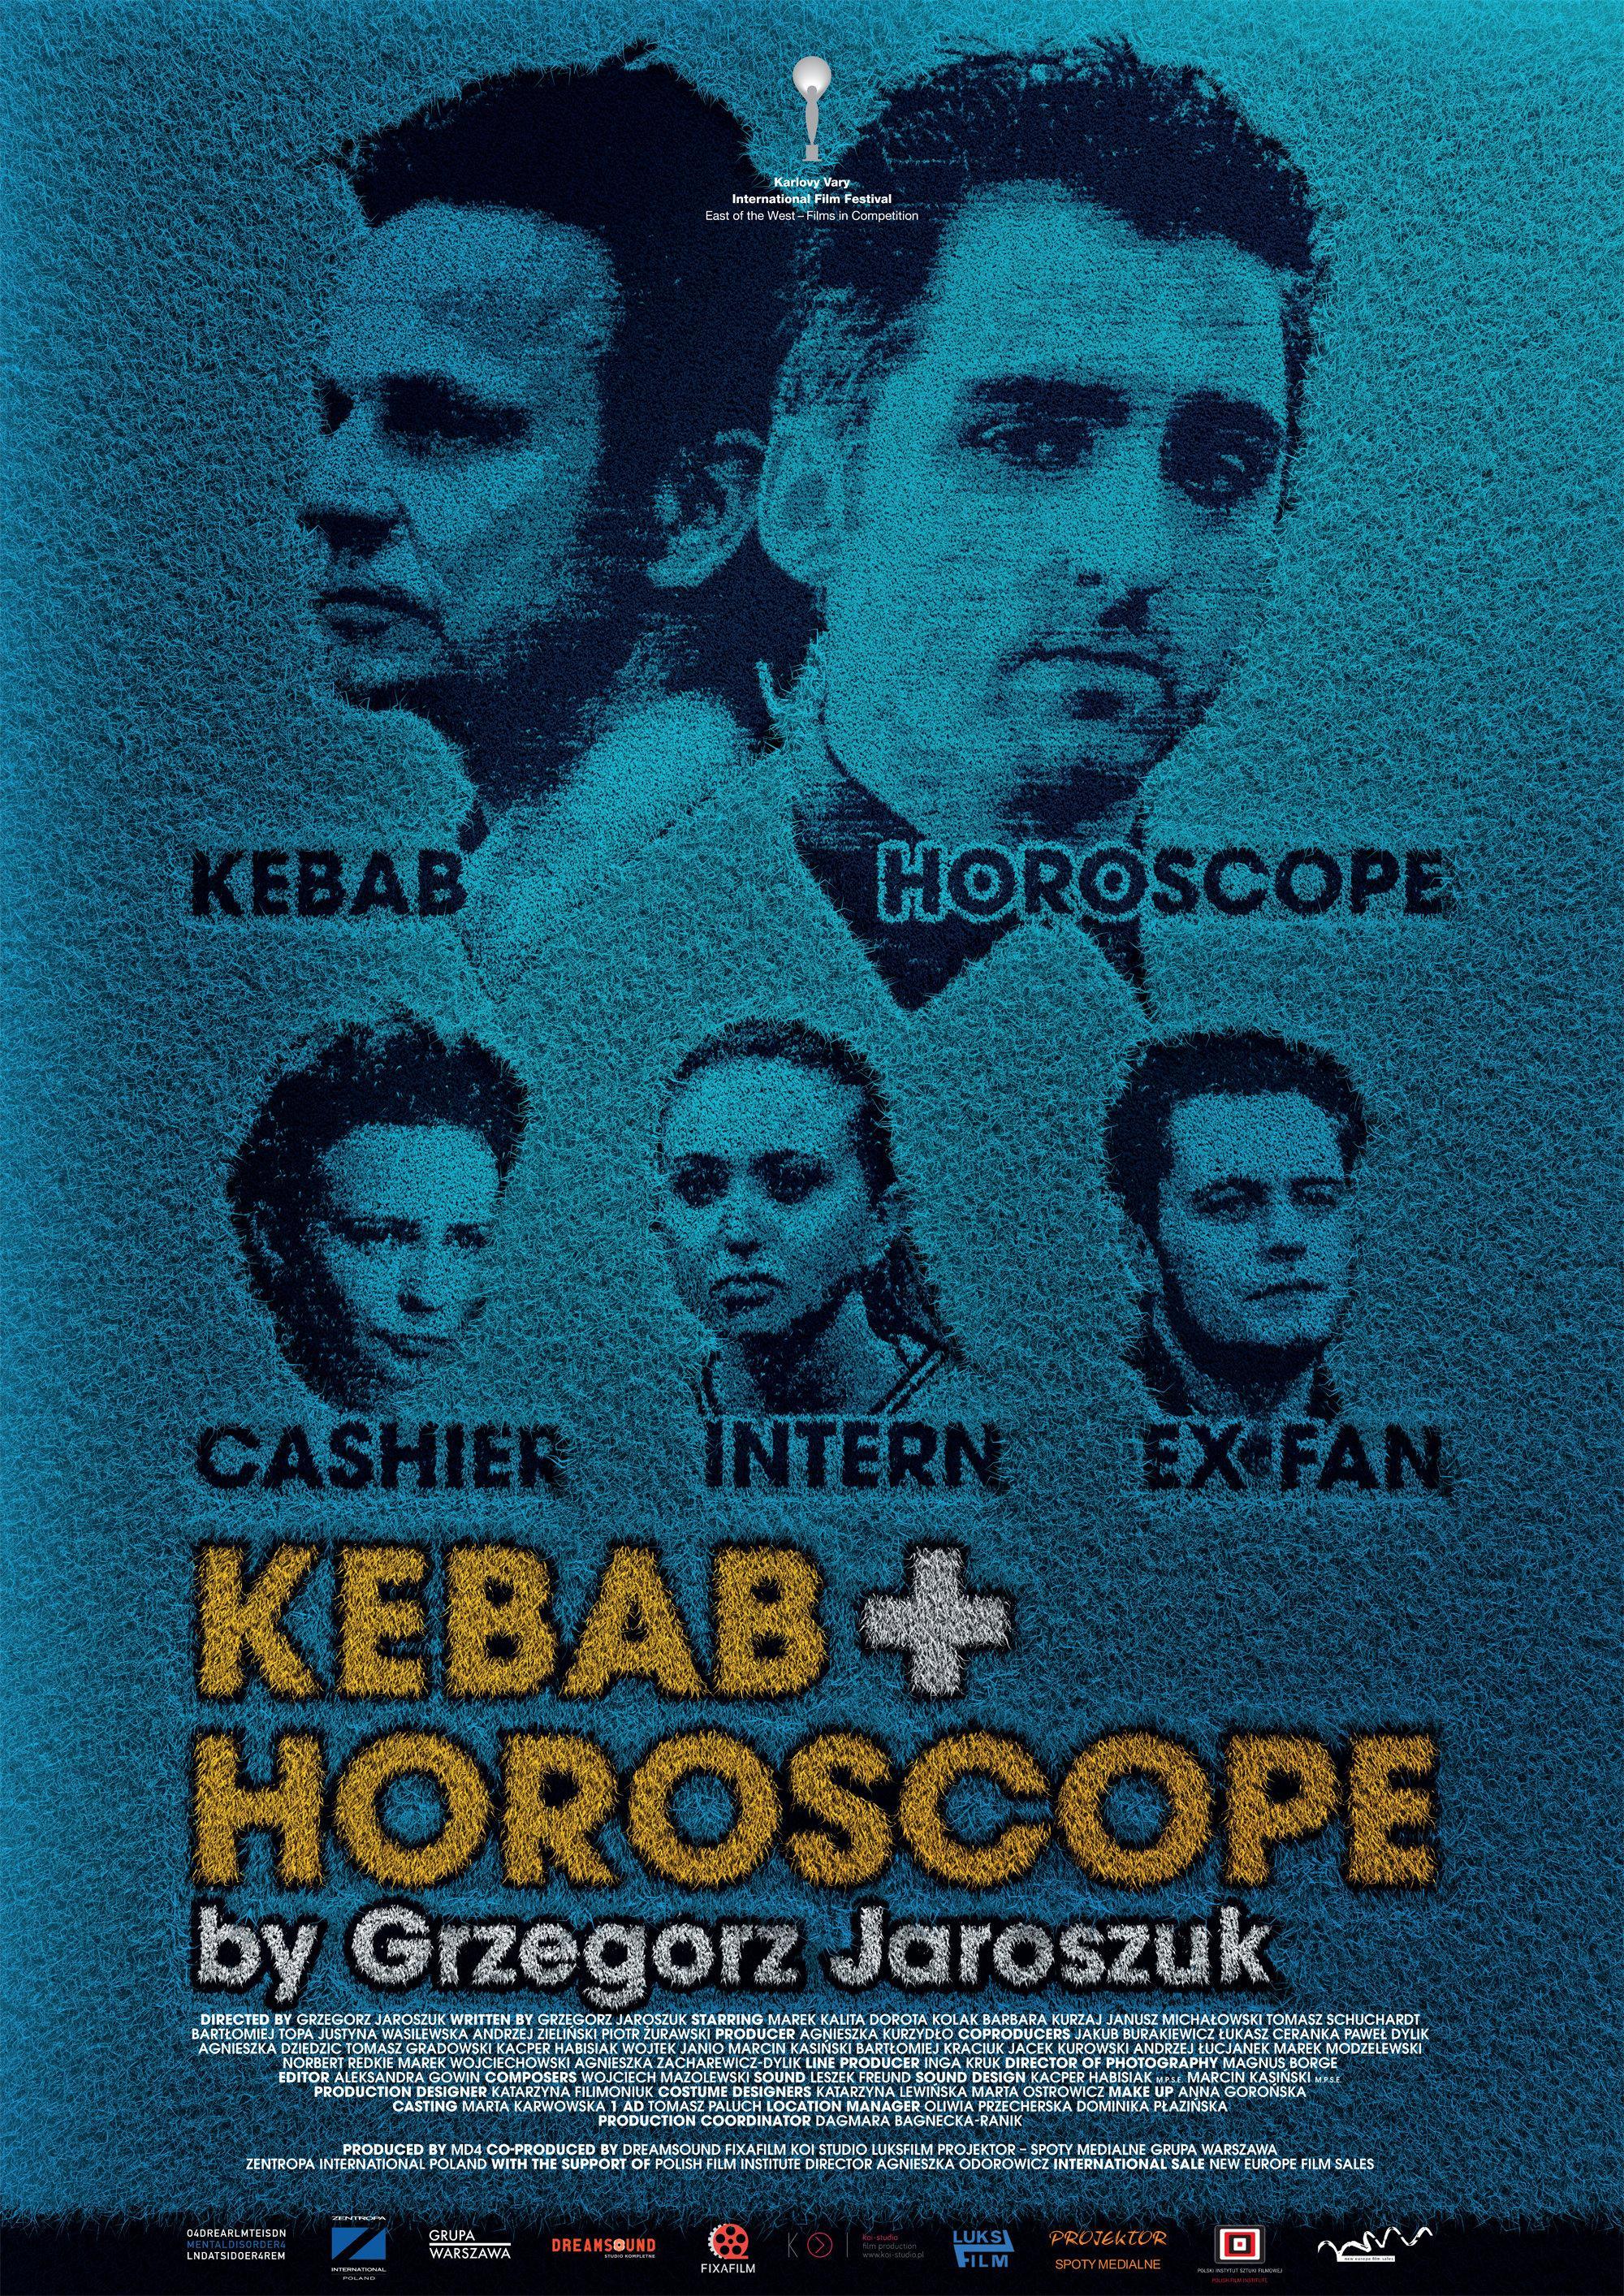 Постер фильма Кебаб и гороскоп | Kebab i horoskop